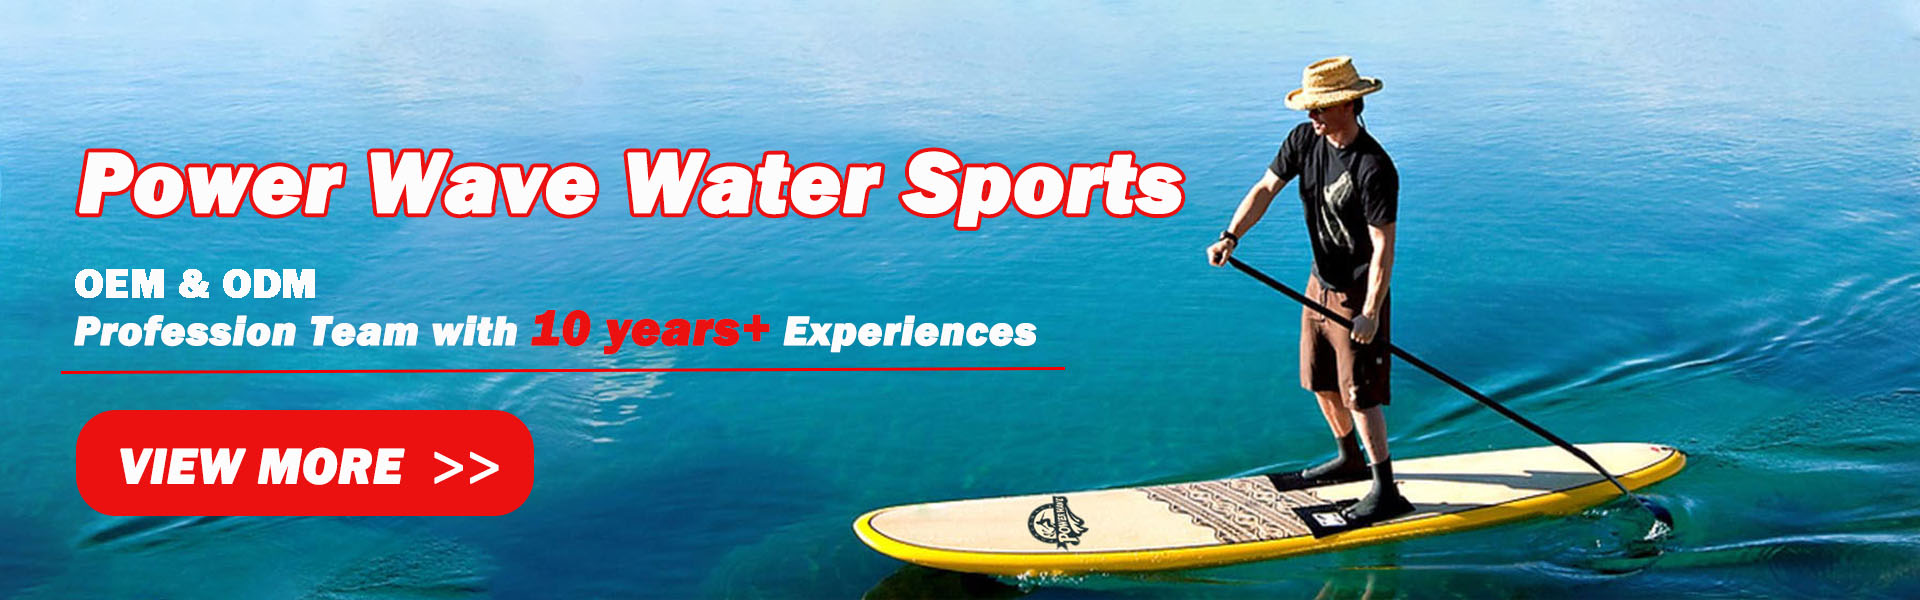 szörfdeszka, puha tábla, sup,Power Wave Water Sports co.Ltd